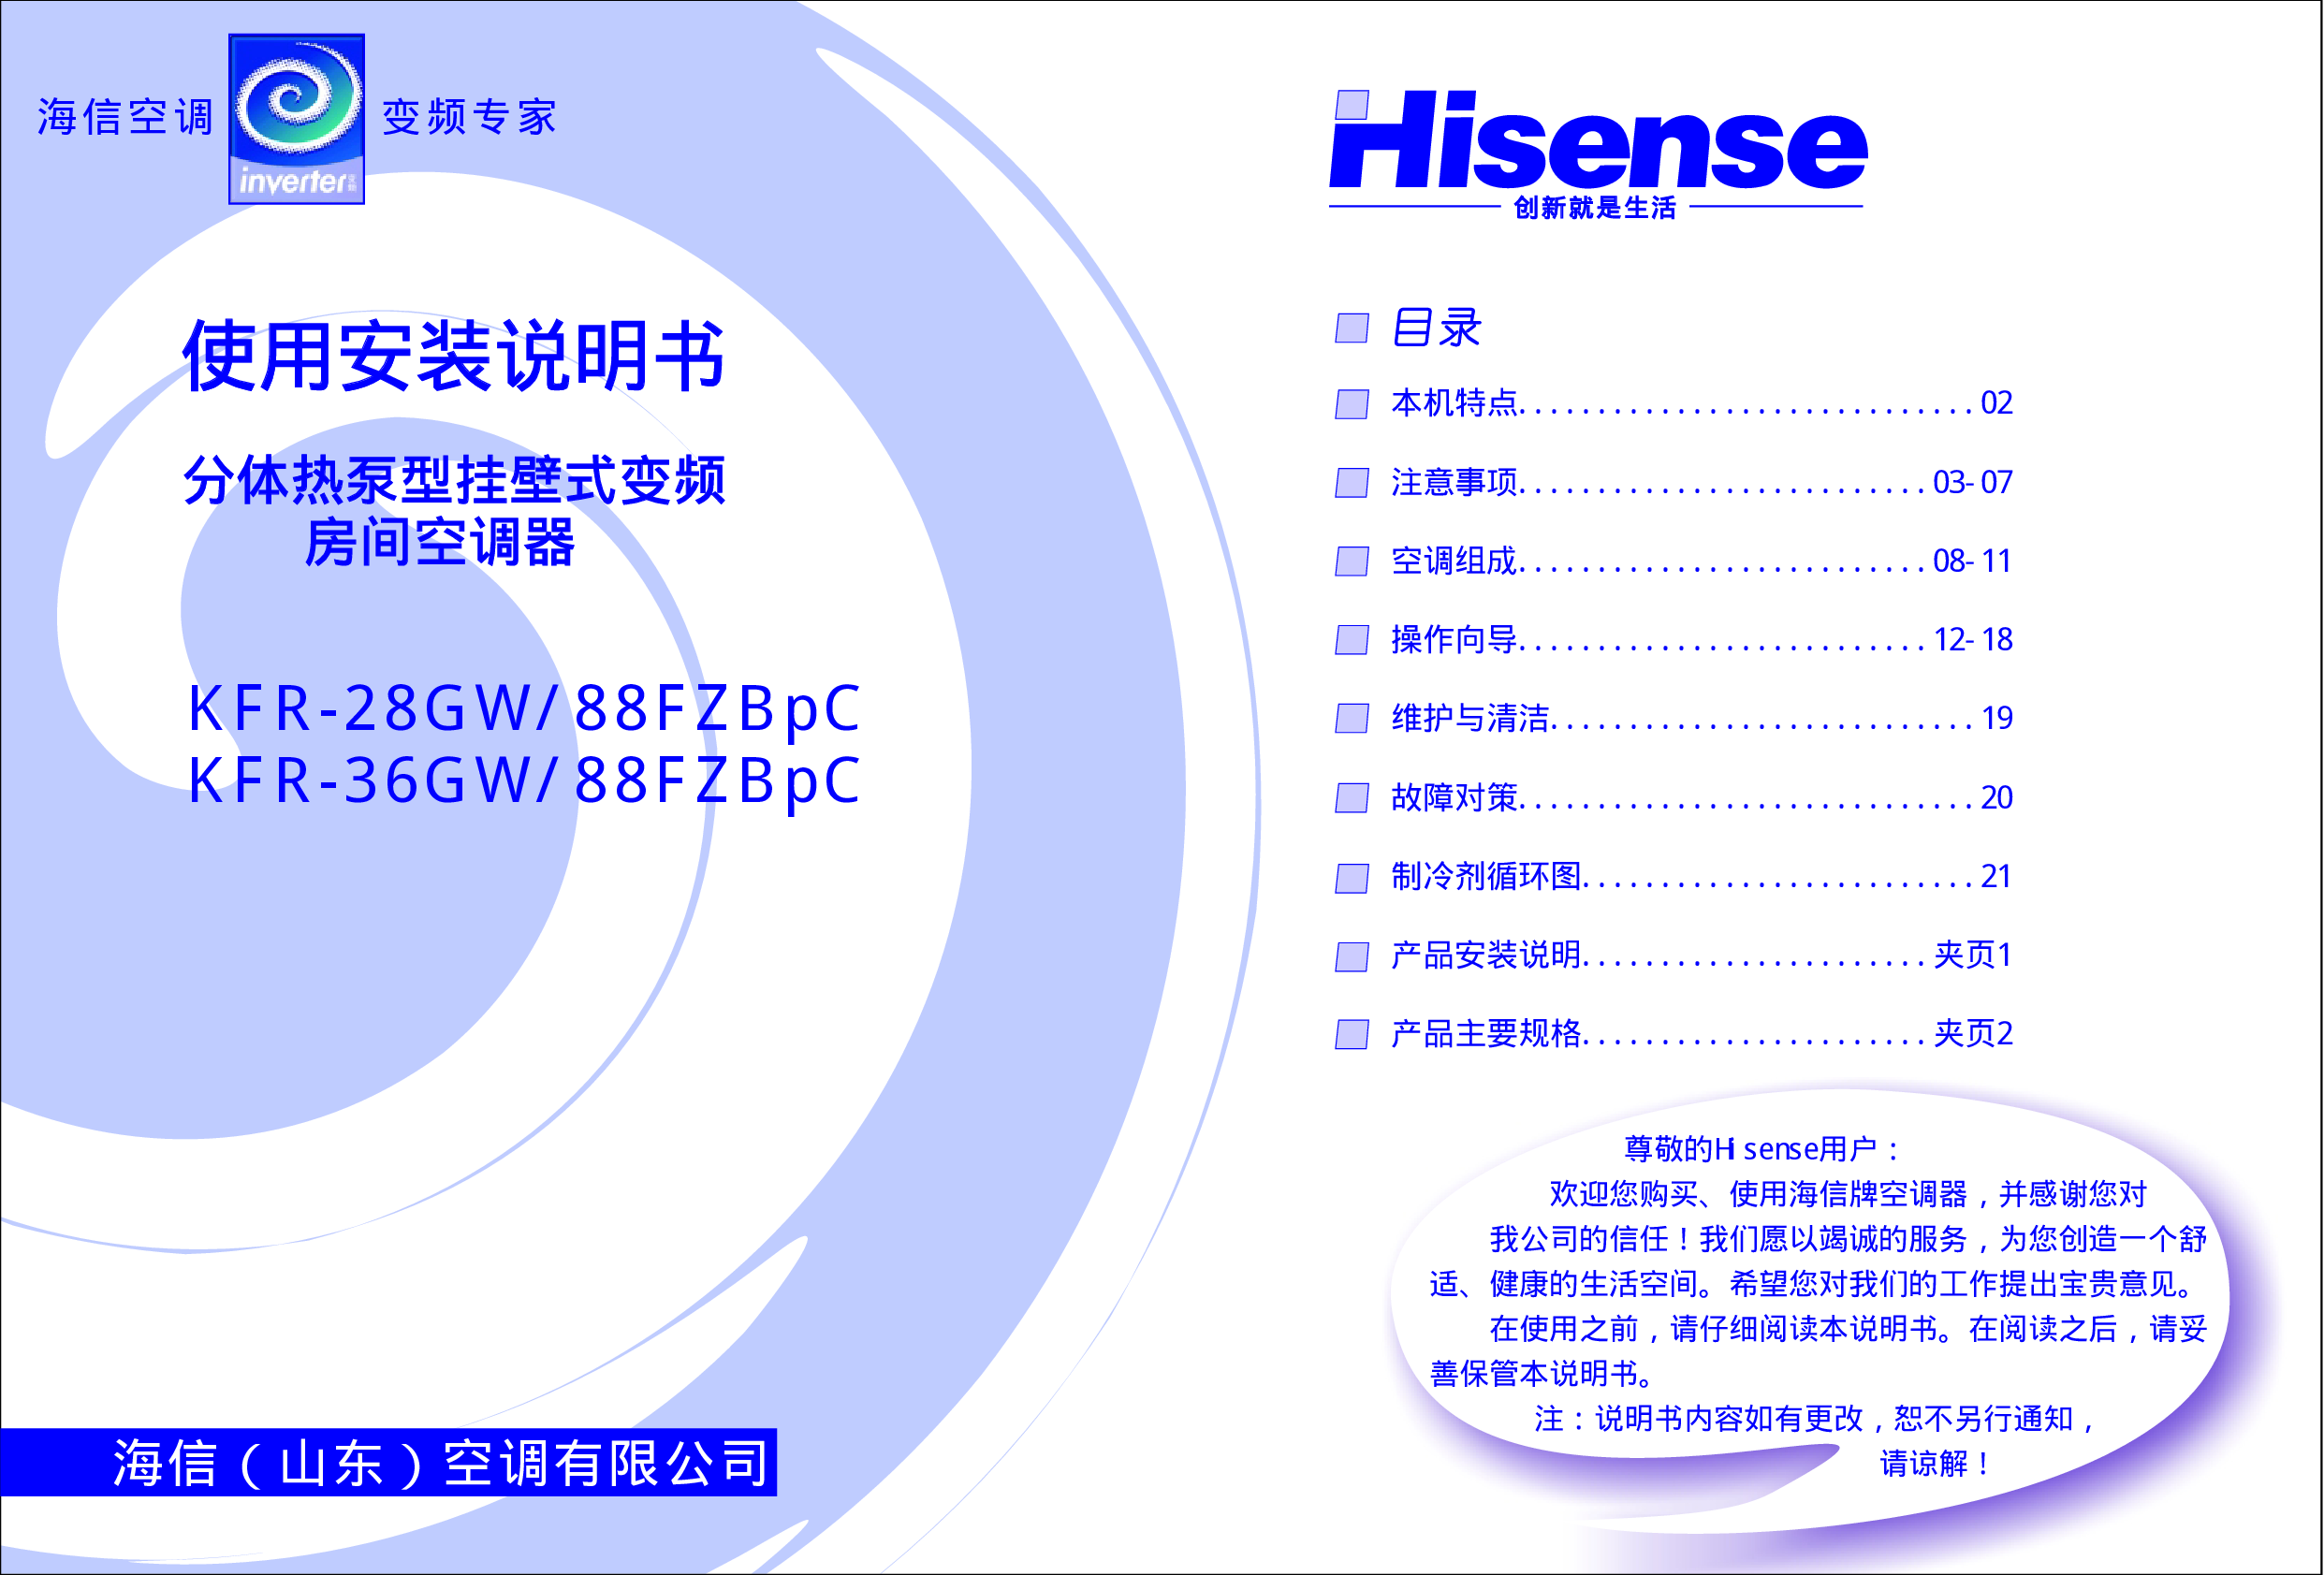 海信 Hisense KFR-28GW/88FZBpC 使用说明书 封面